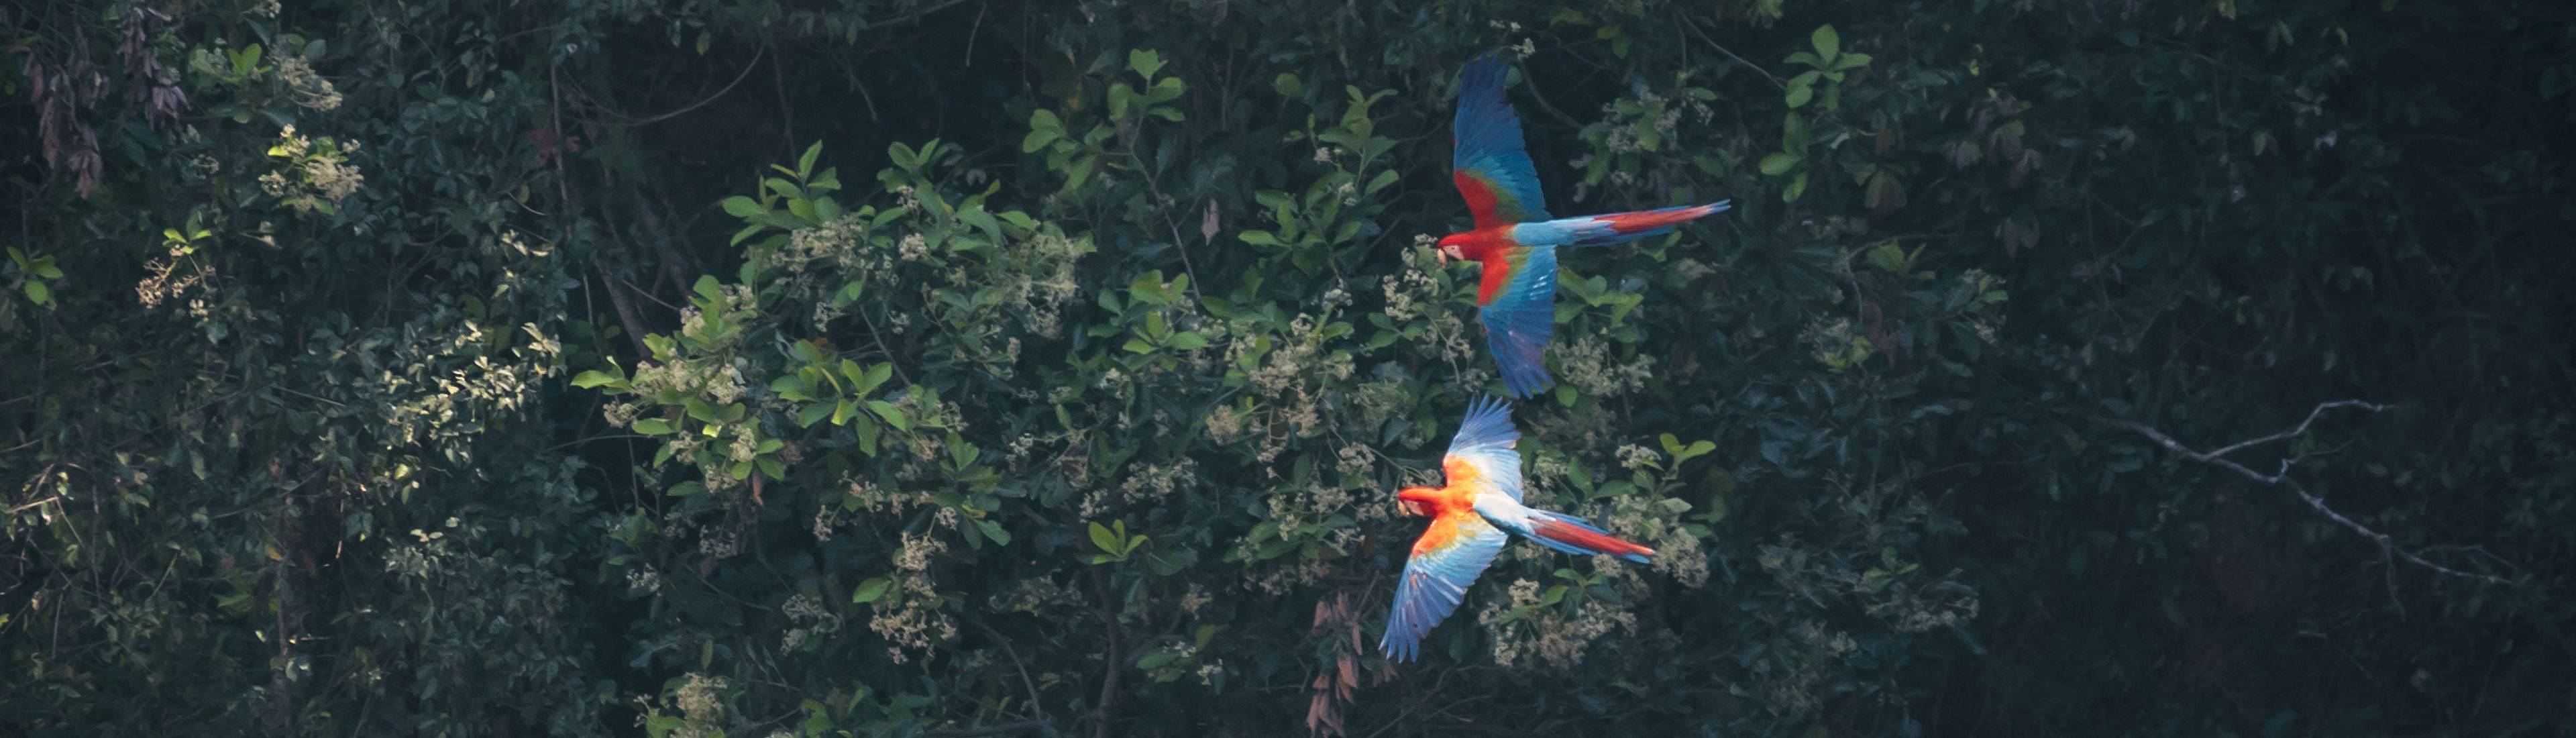 Zwei Ara-Papageien im brasilianischen Amazonas